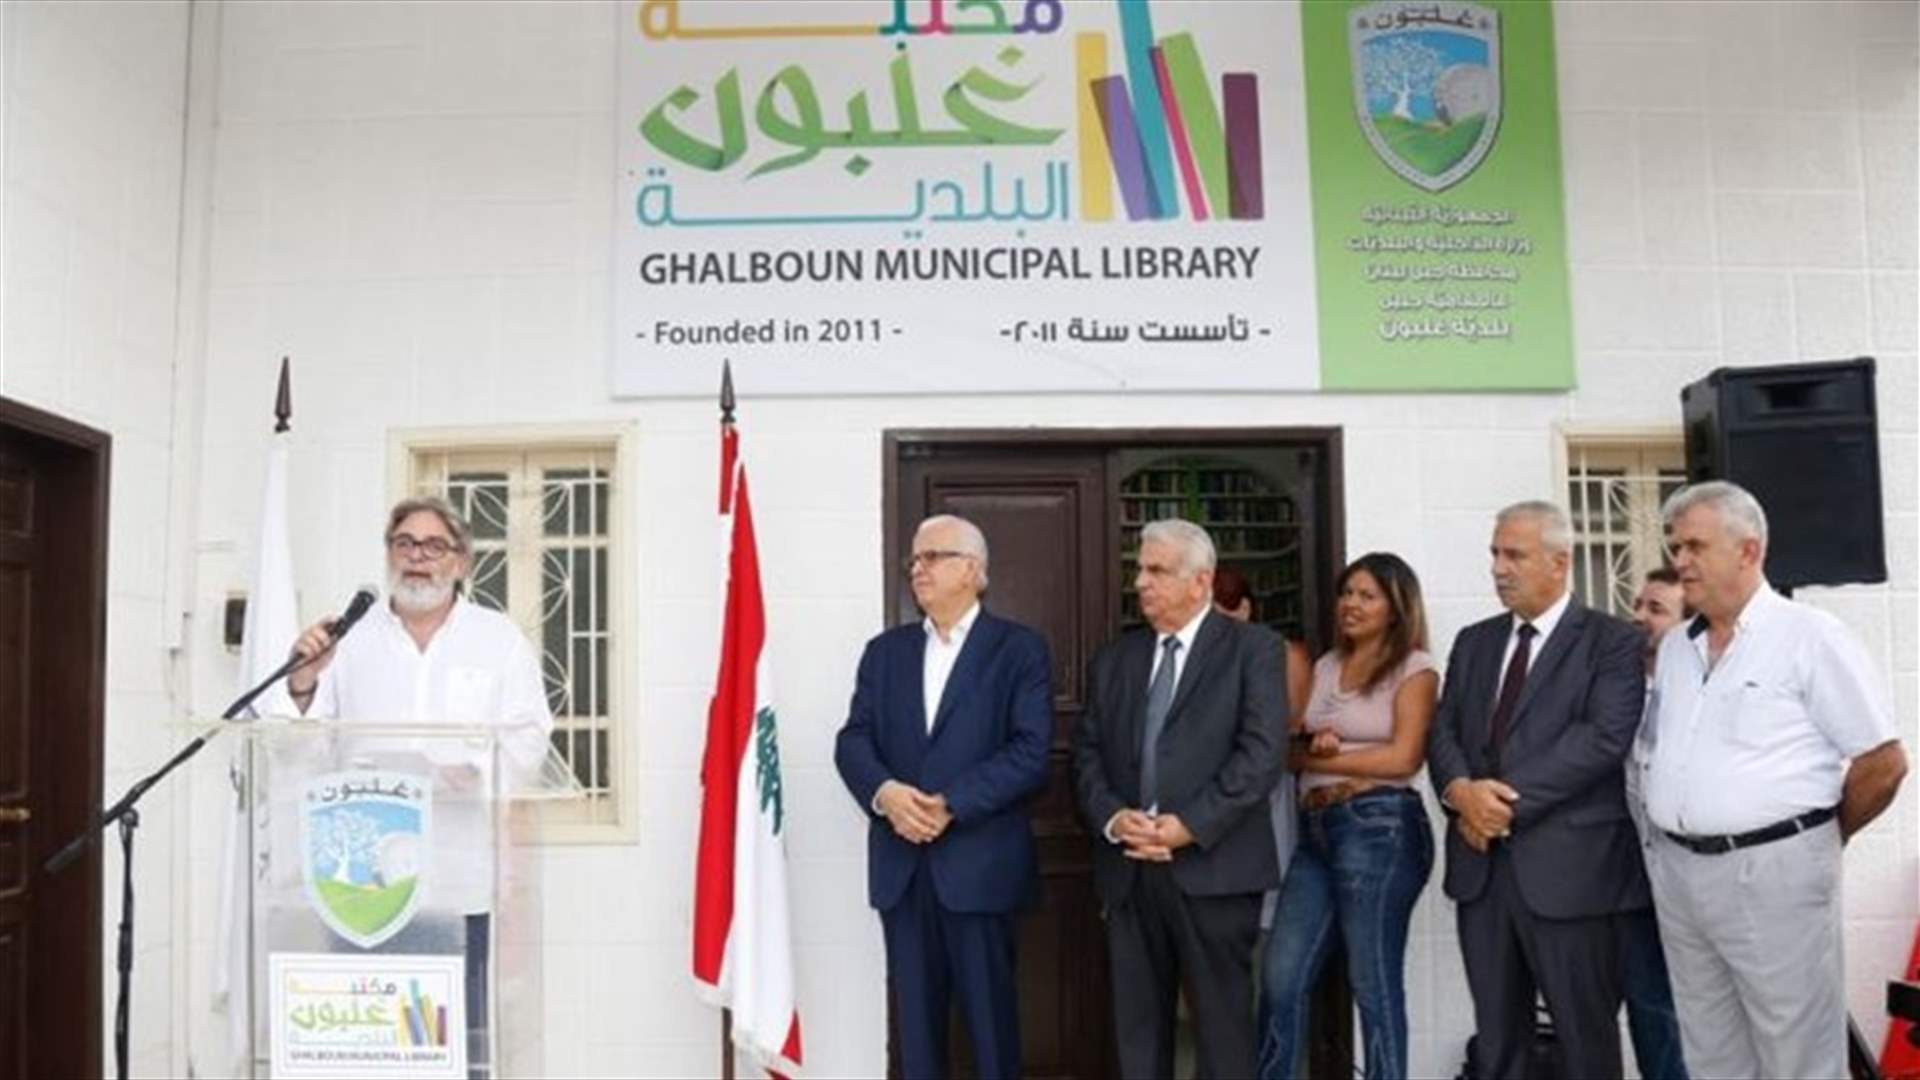 افتتاح مكتبة عامة في بلدية غلبون بدعم من نادي &quot;روتاري بيروت سيدرز&quot; (صور)